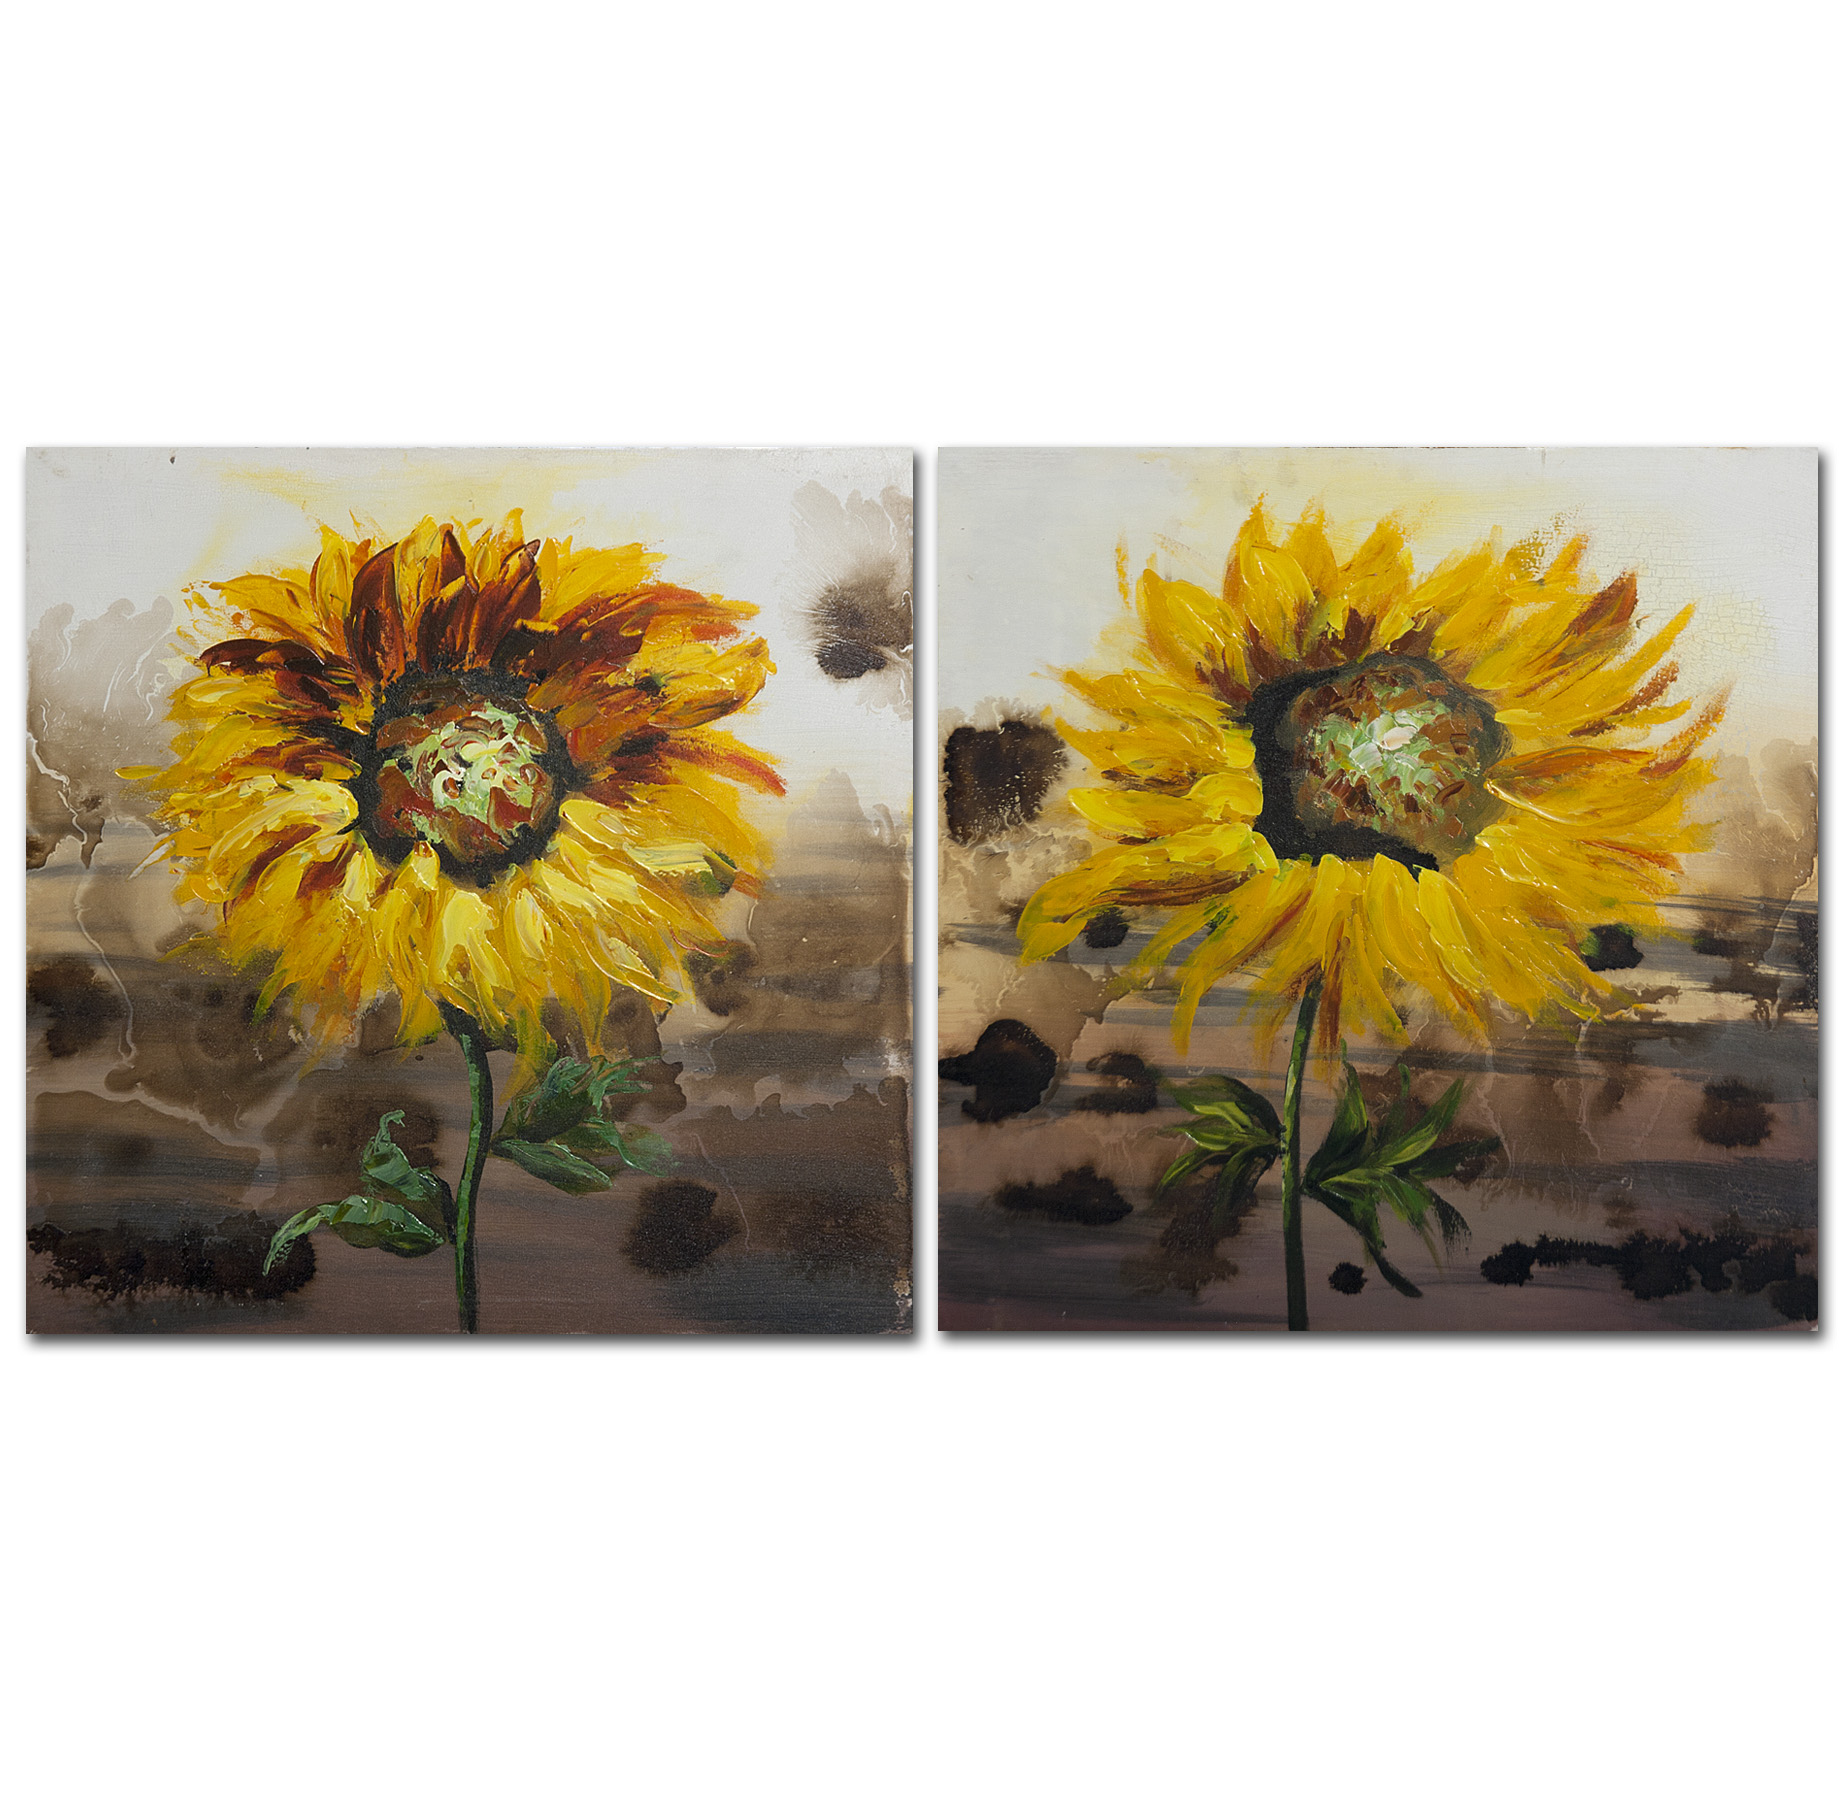 Sonnenblumen - Ölbild auf Leinwand 50 x 50 cm (nur im 2er-Set lieferbar)